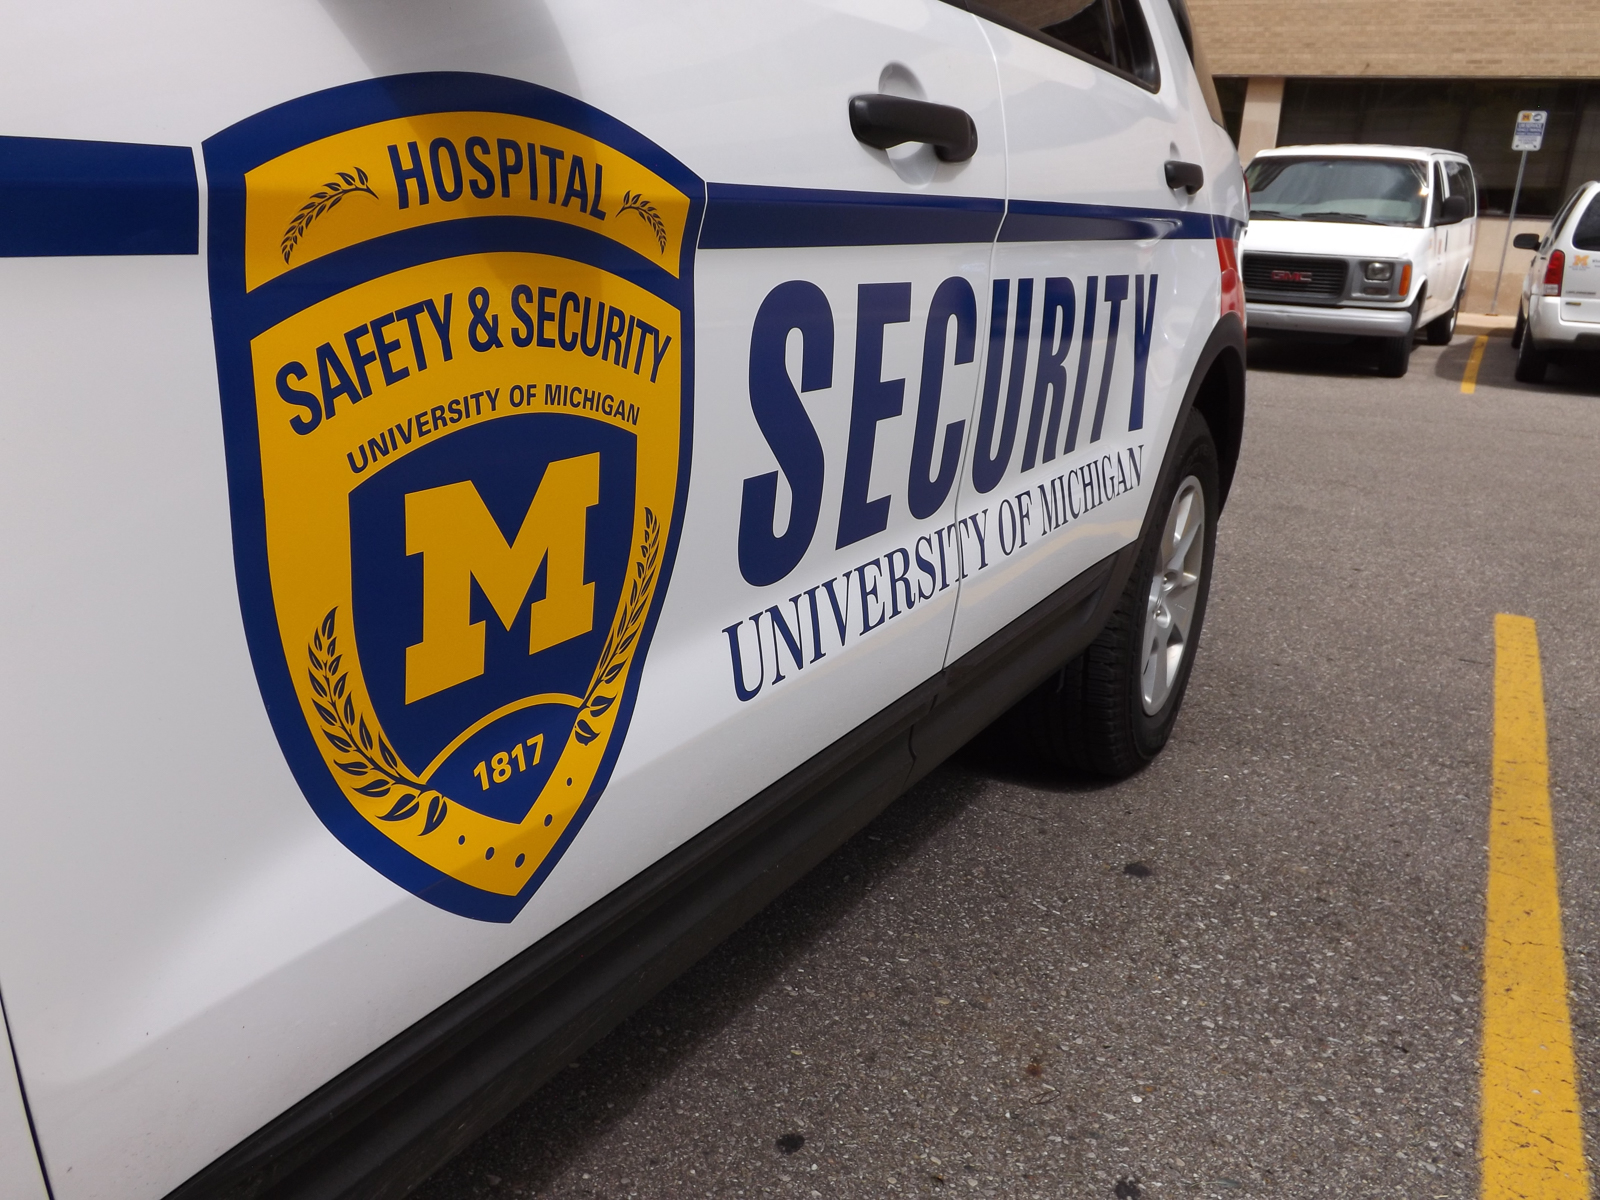 Michigan Medicine Security patrol vehicle decals